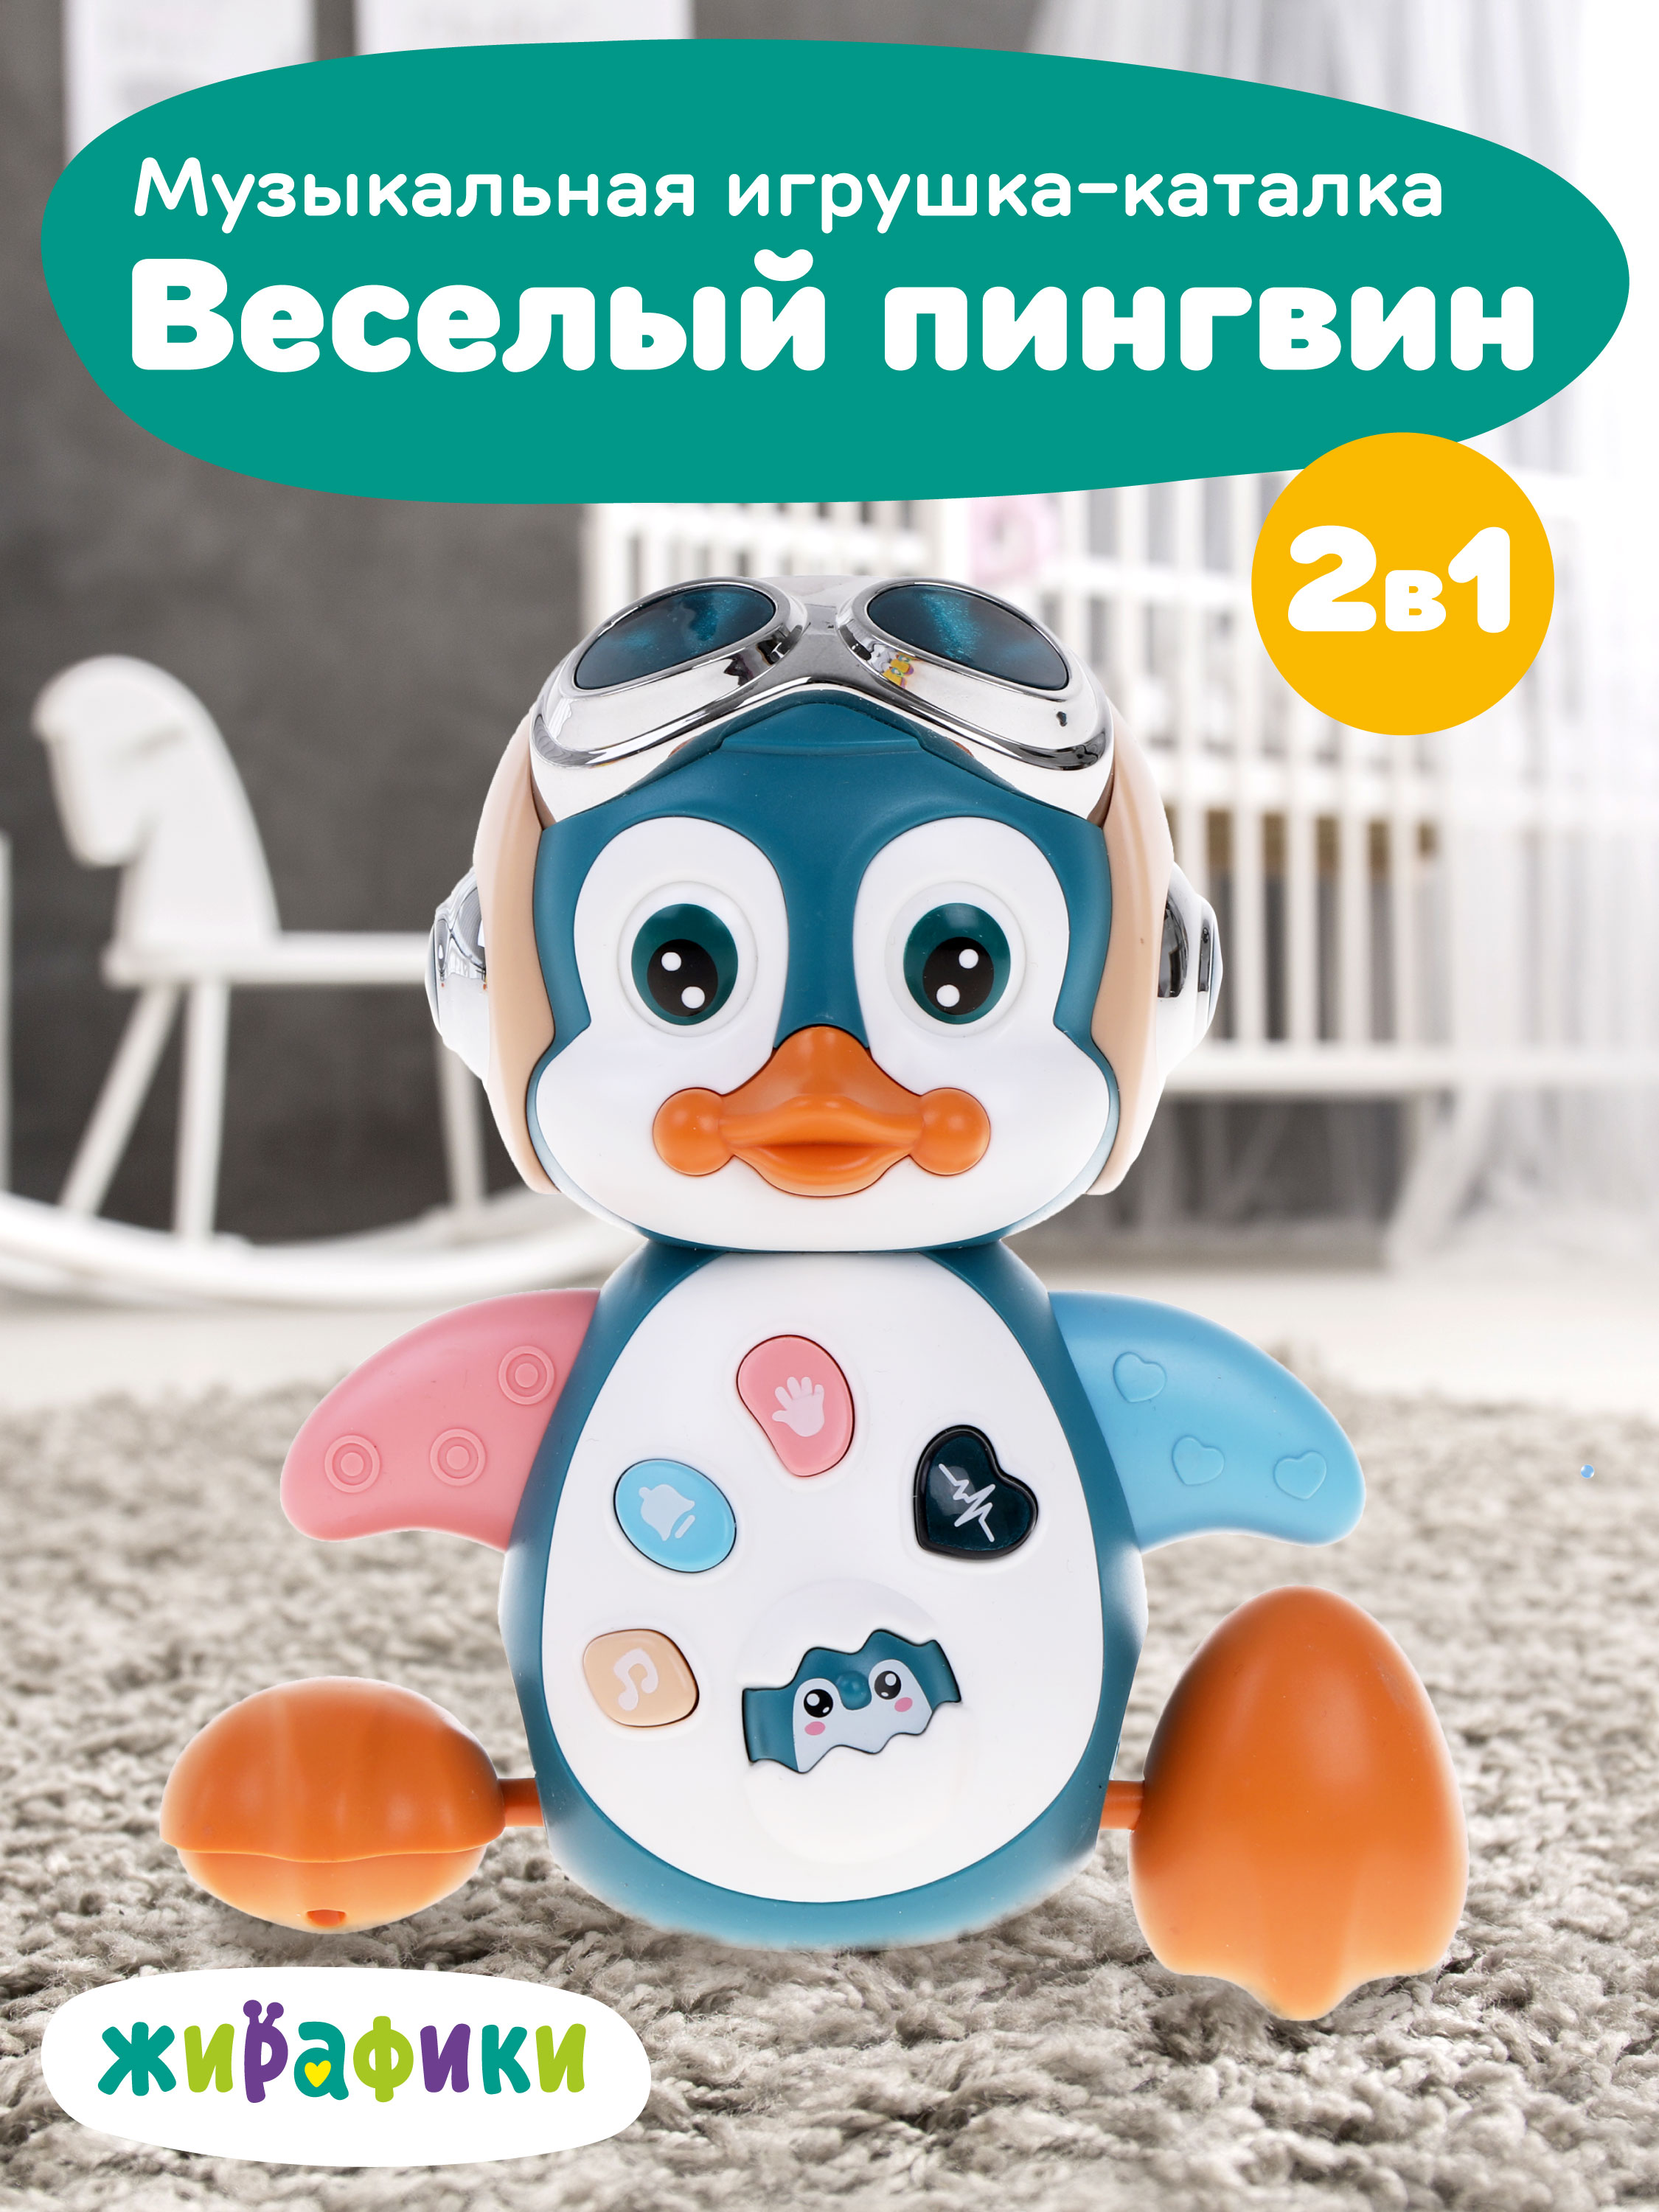 Развивающая музыкальная игрушка-каталка Жирафики Веселый пингвин, 939974 развивающая игрушка сортер каталка домик в ассортименте 2392310